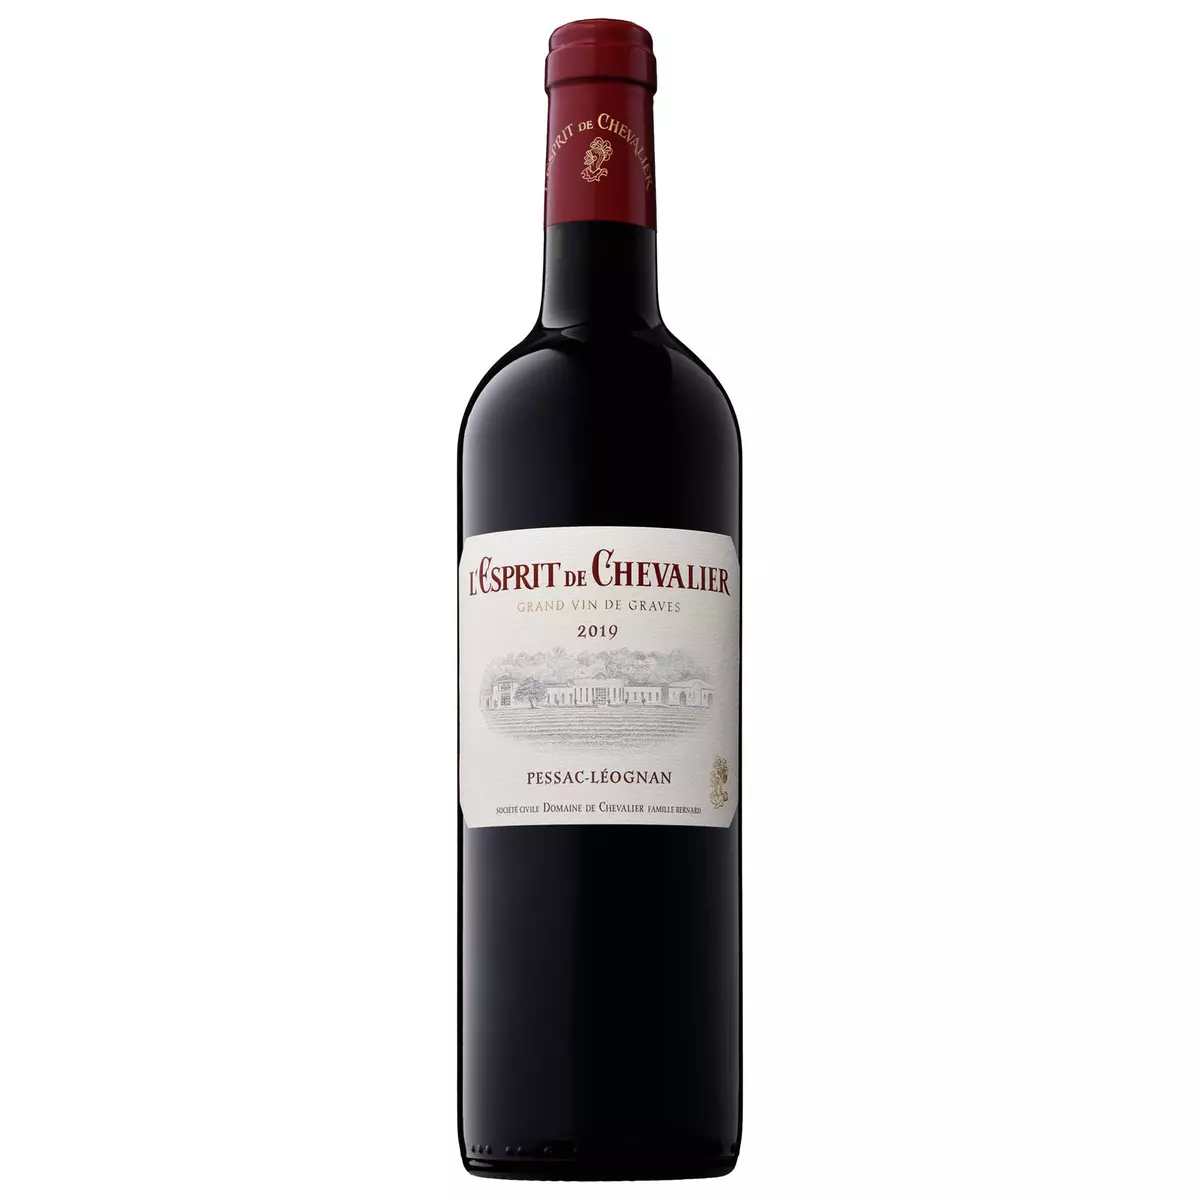 Vin rouge AOP Pessac-Léognan l'Esprit de Chevalier second vin du Domaine Chevalier 2019 75cl